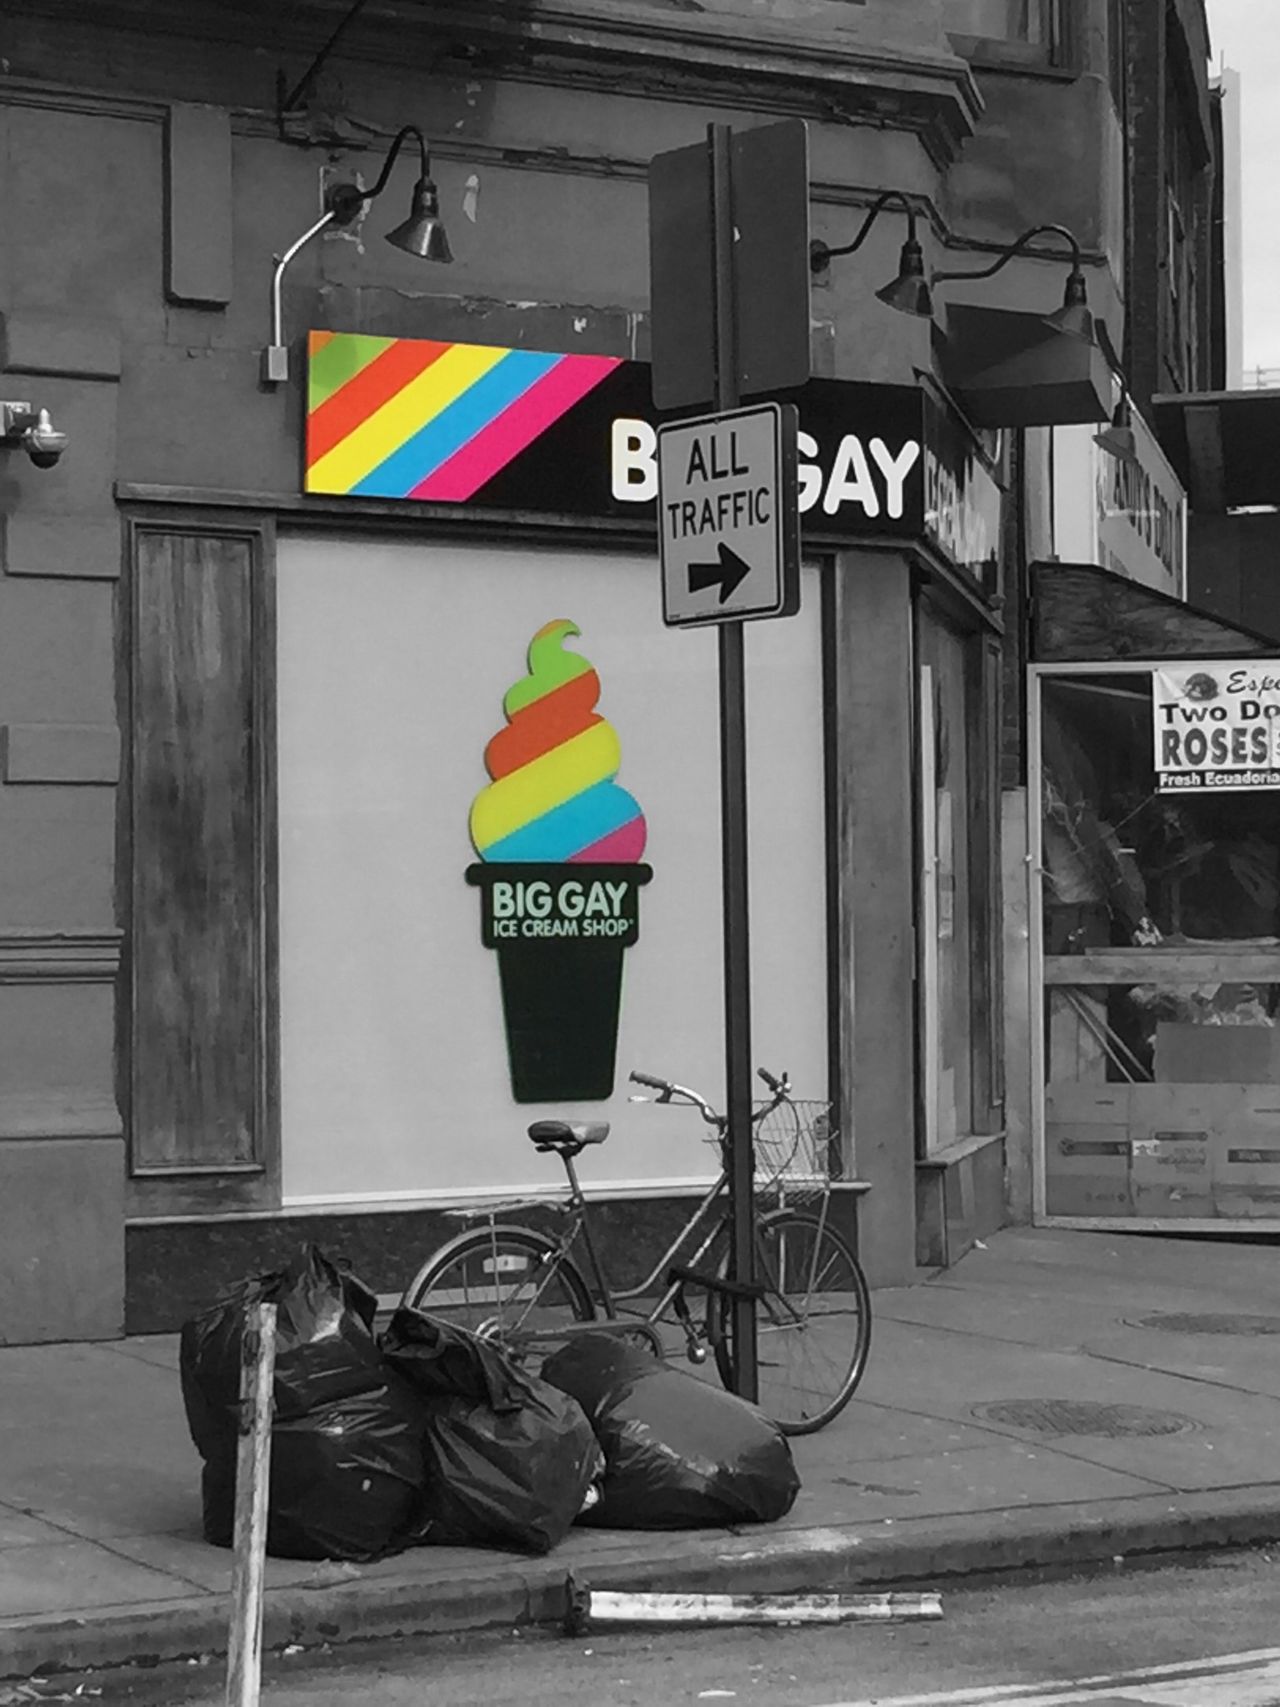 Big gay ice cream shop